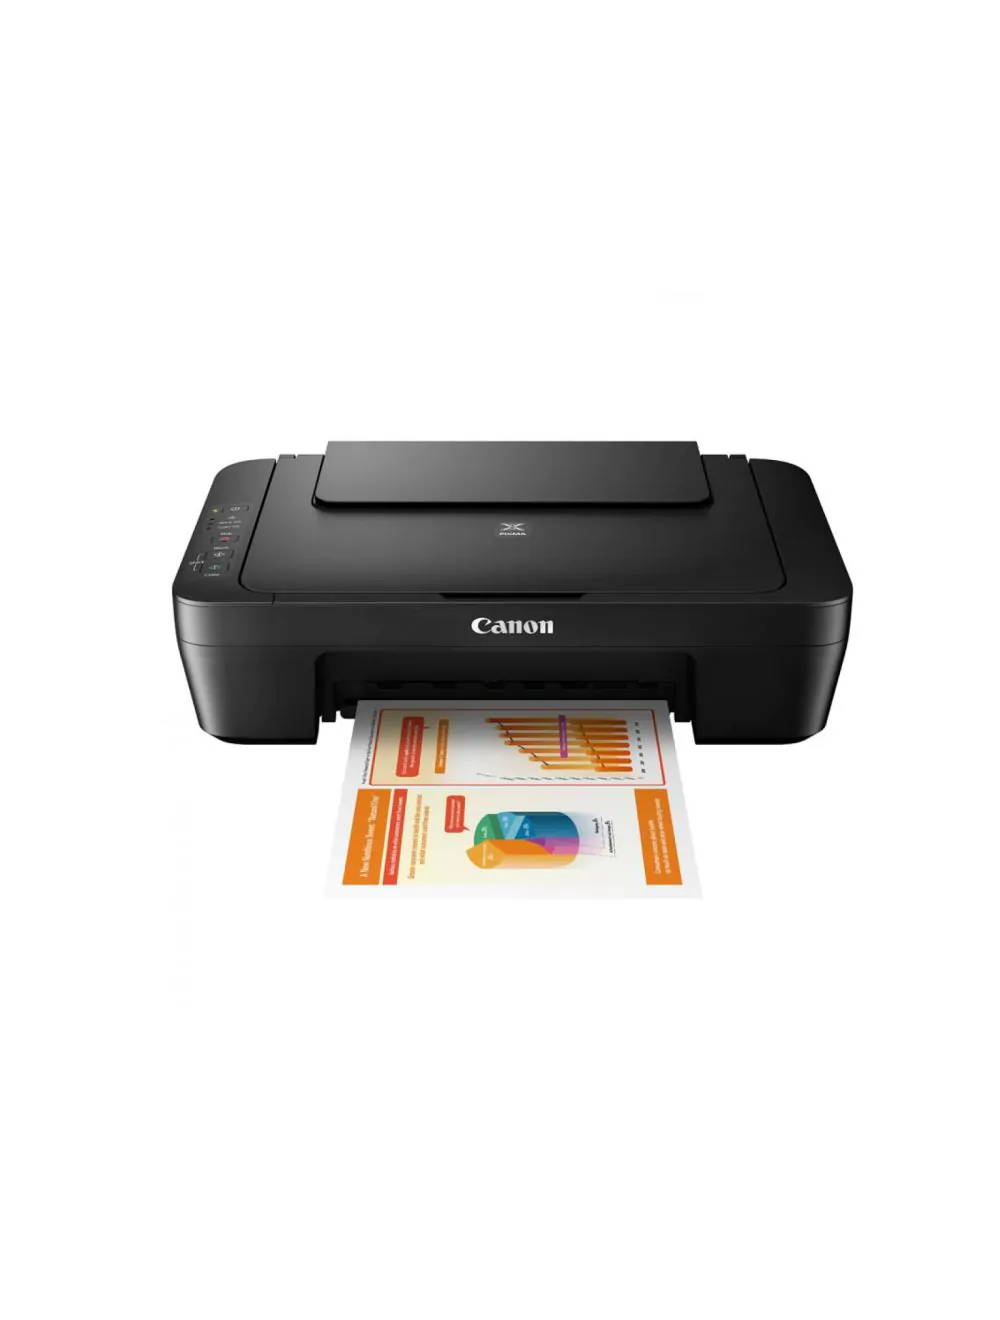 Canon Colour Printer at Best Price in Siliguri